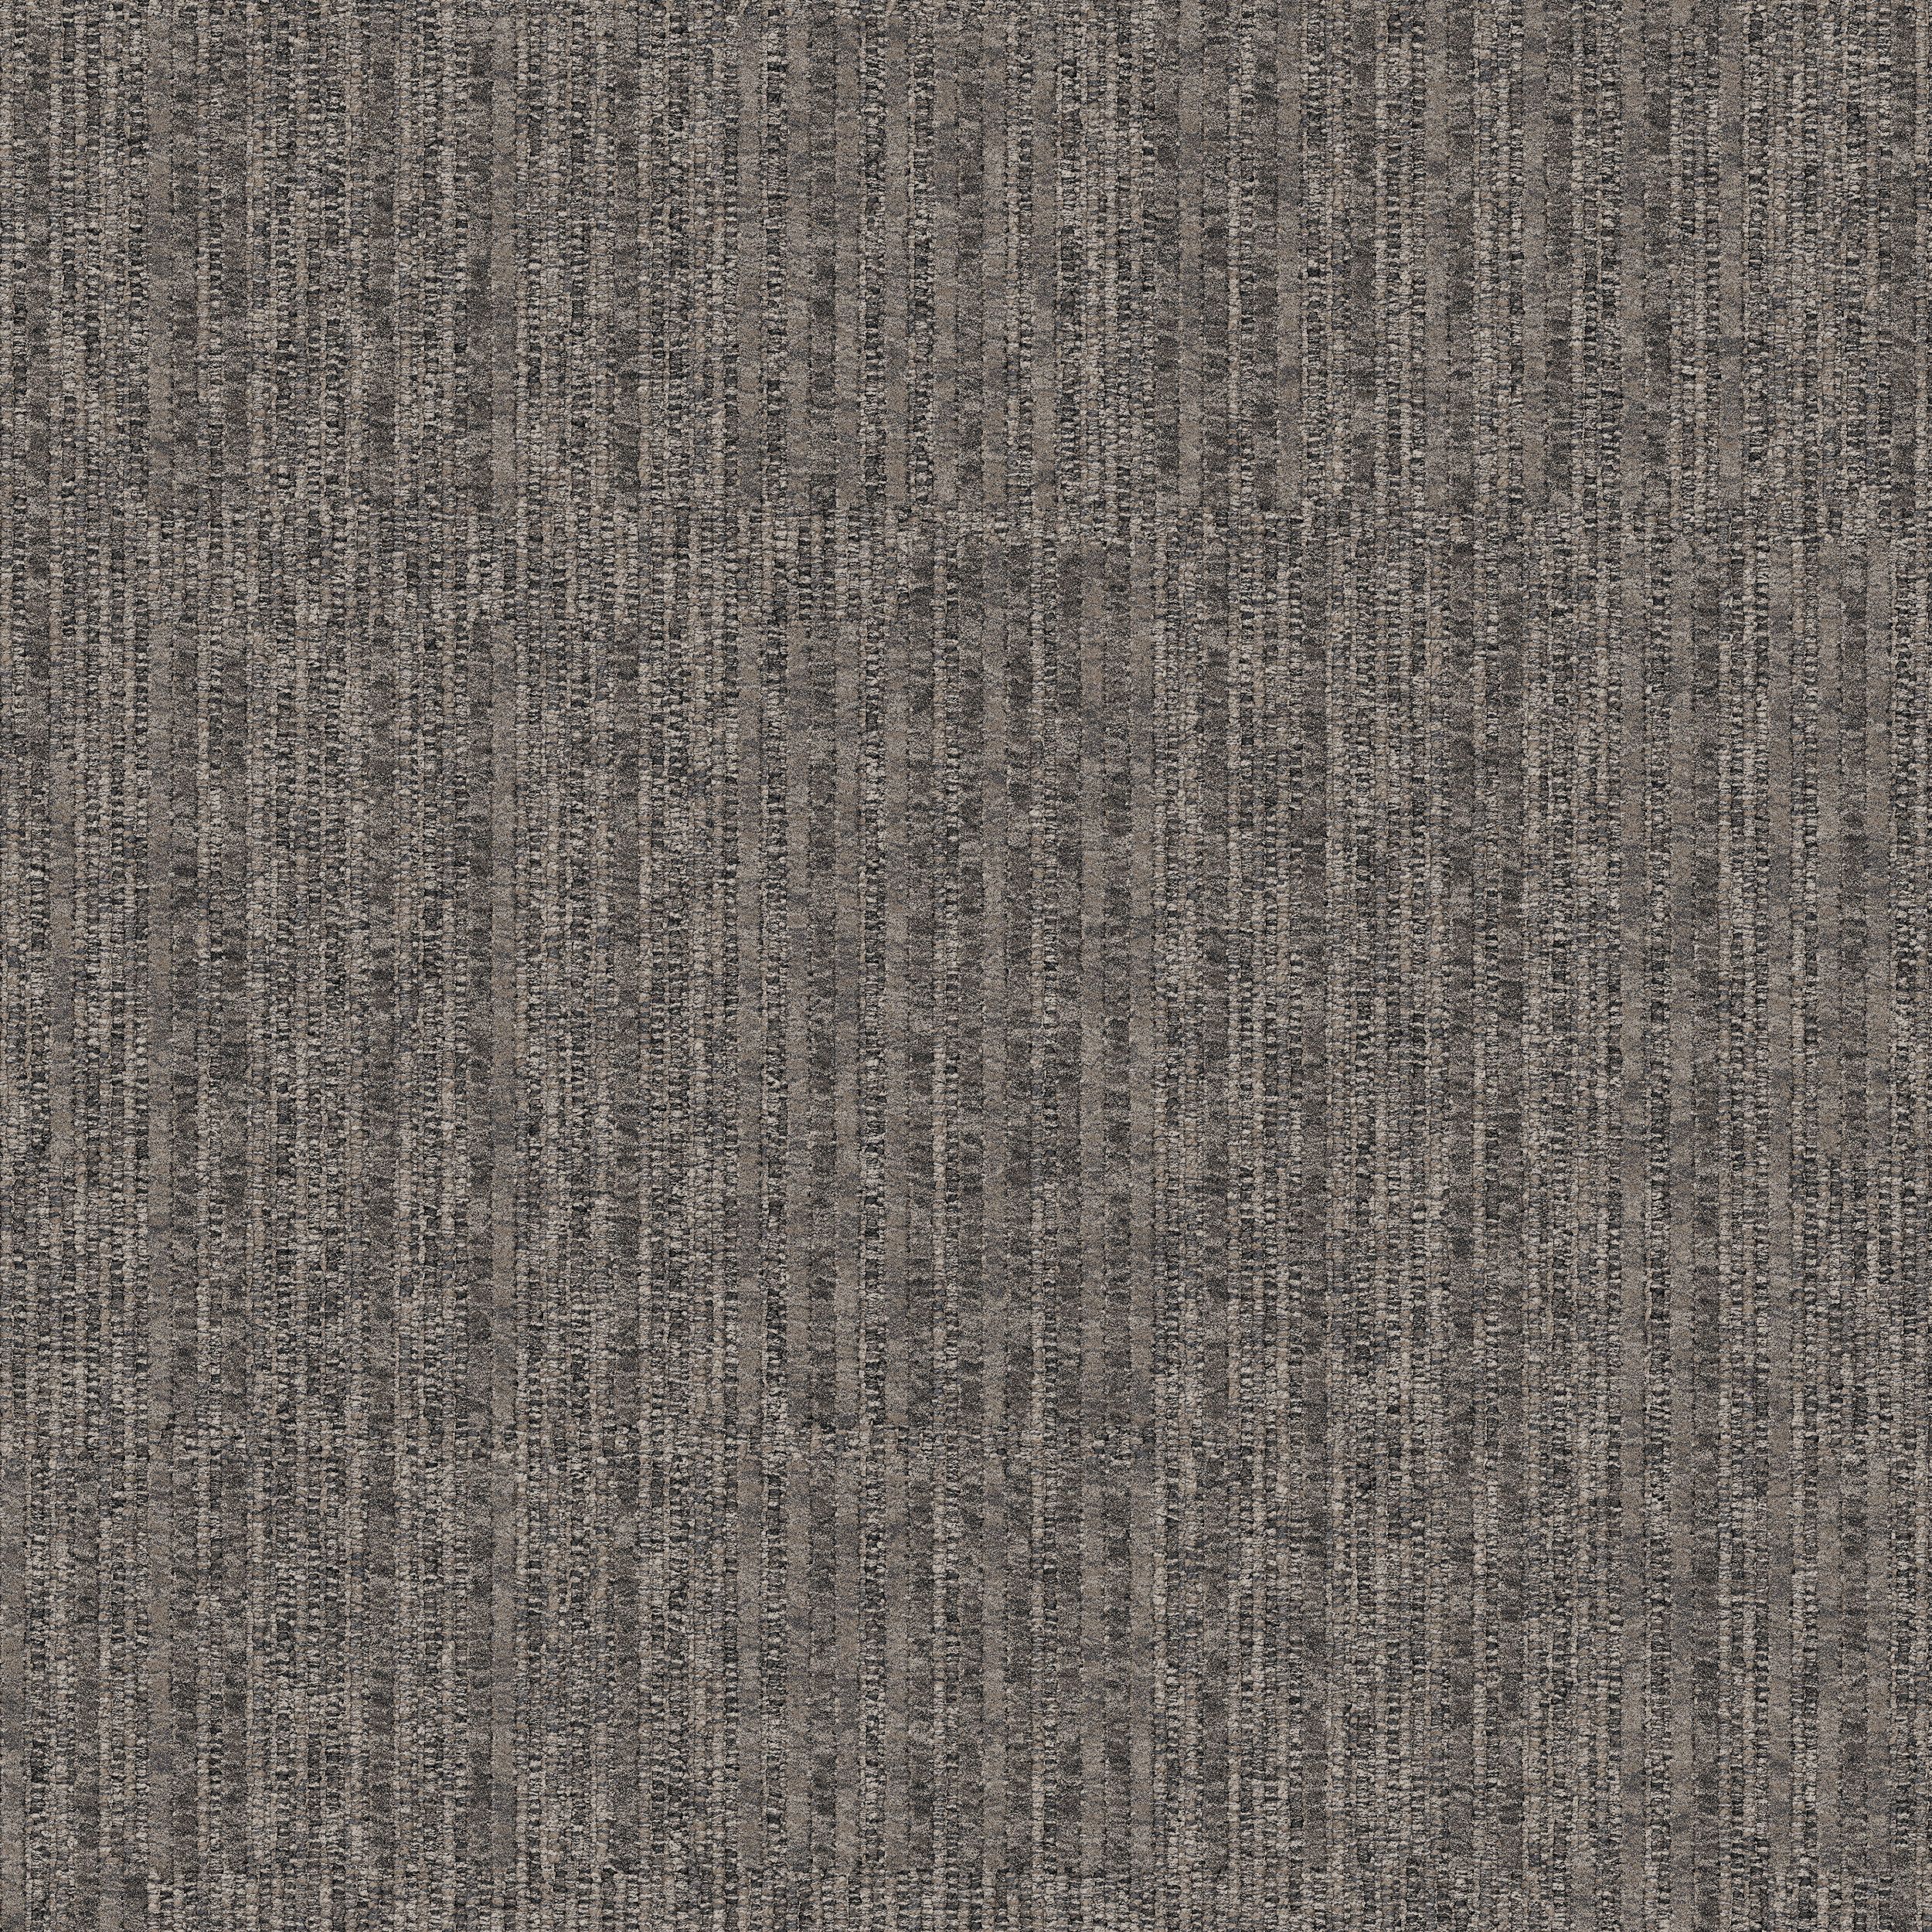 Equilibrium Carpet Tile In Persistence número de imagen 8